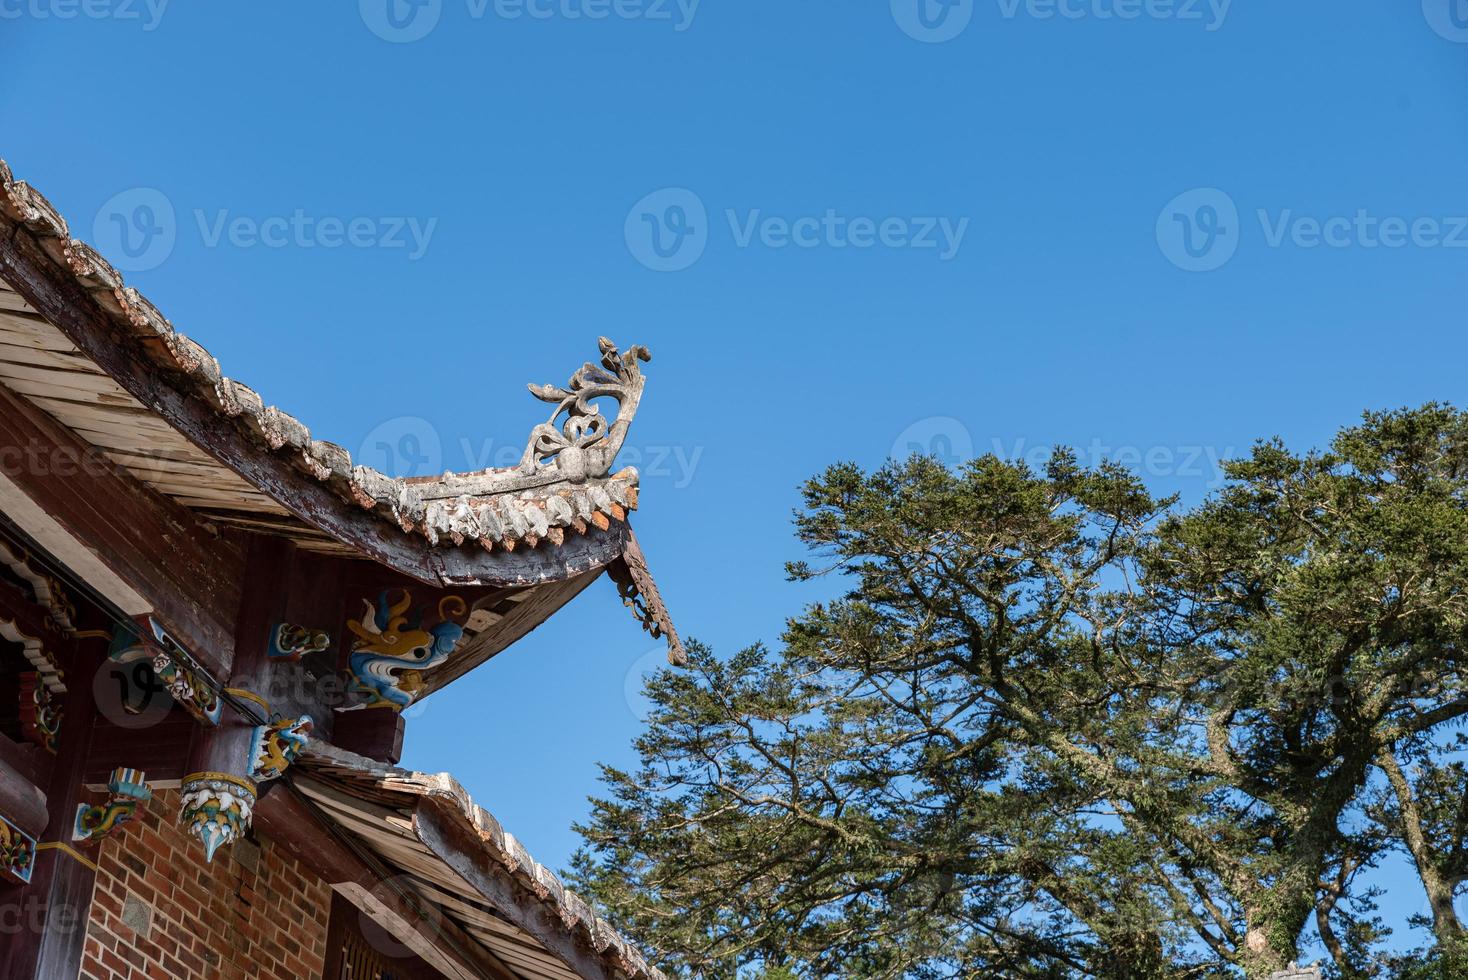 quelques détails de l'extérieur des temples bouddhistes chinois traditionnels photo